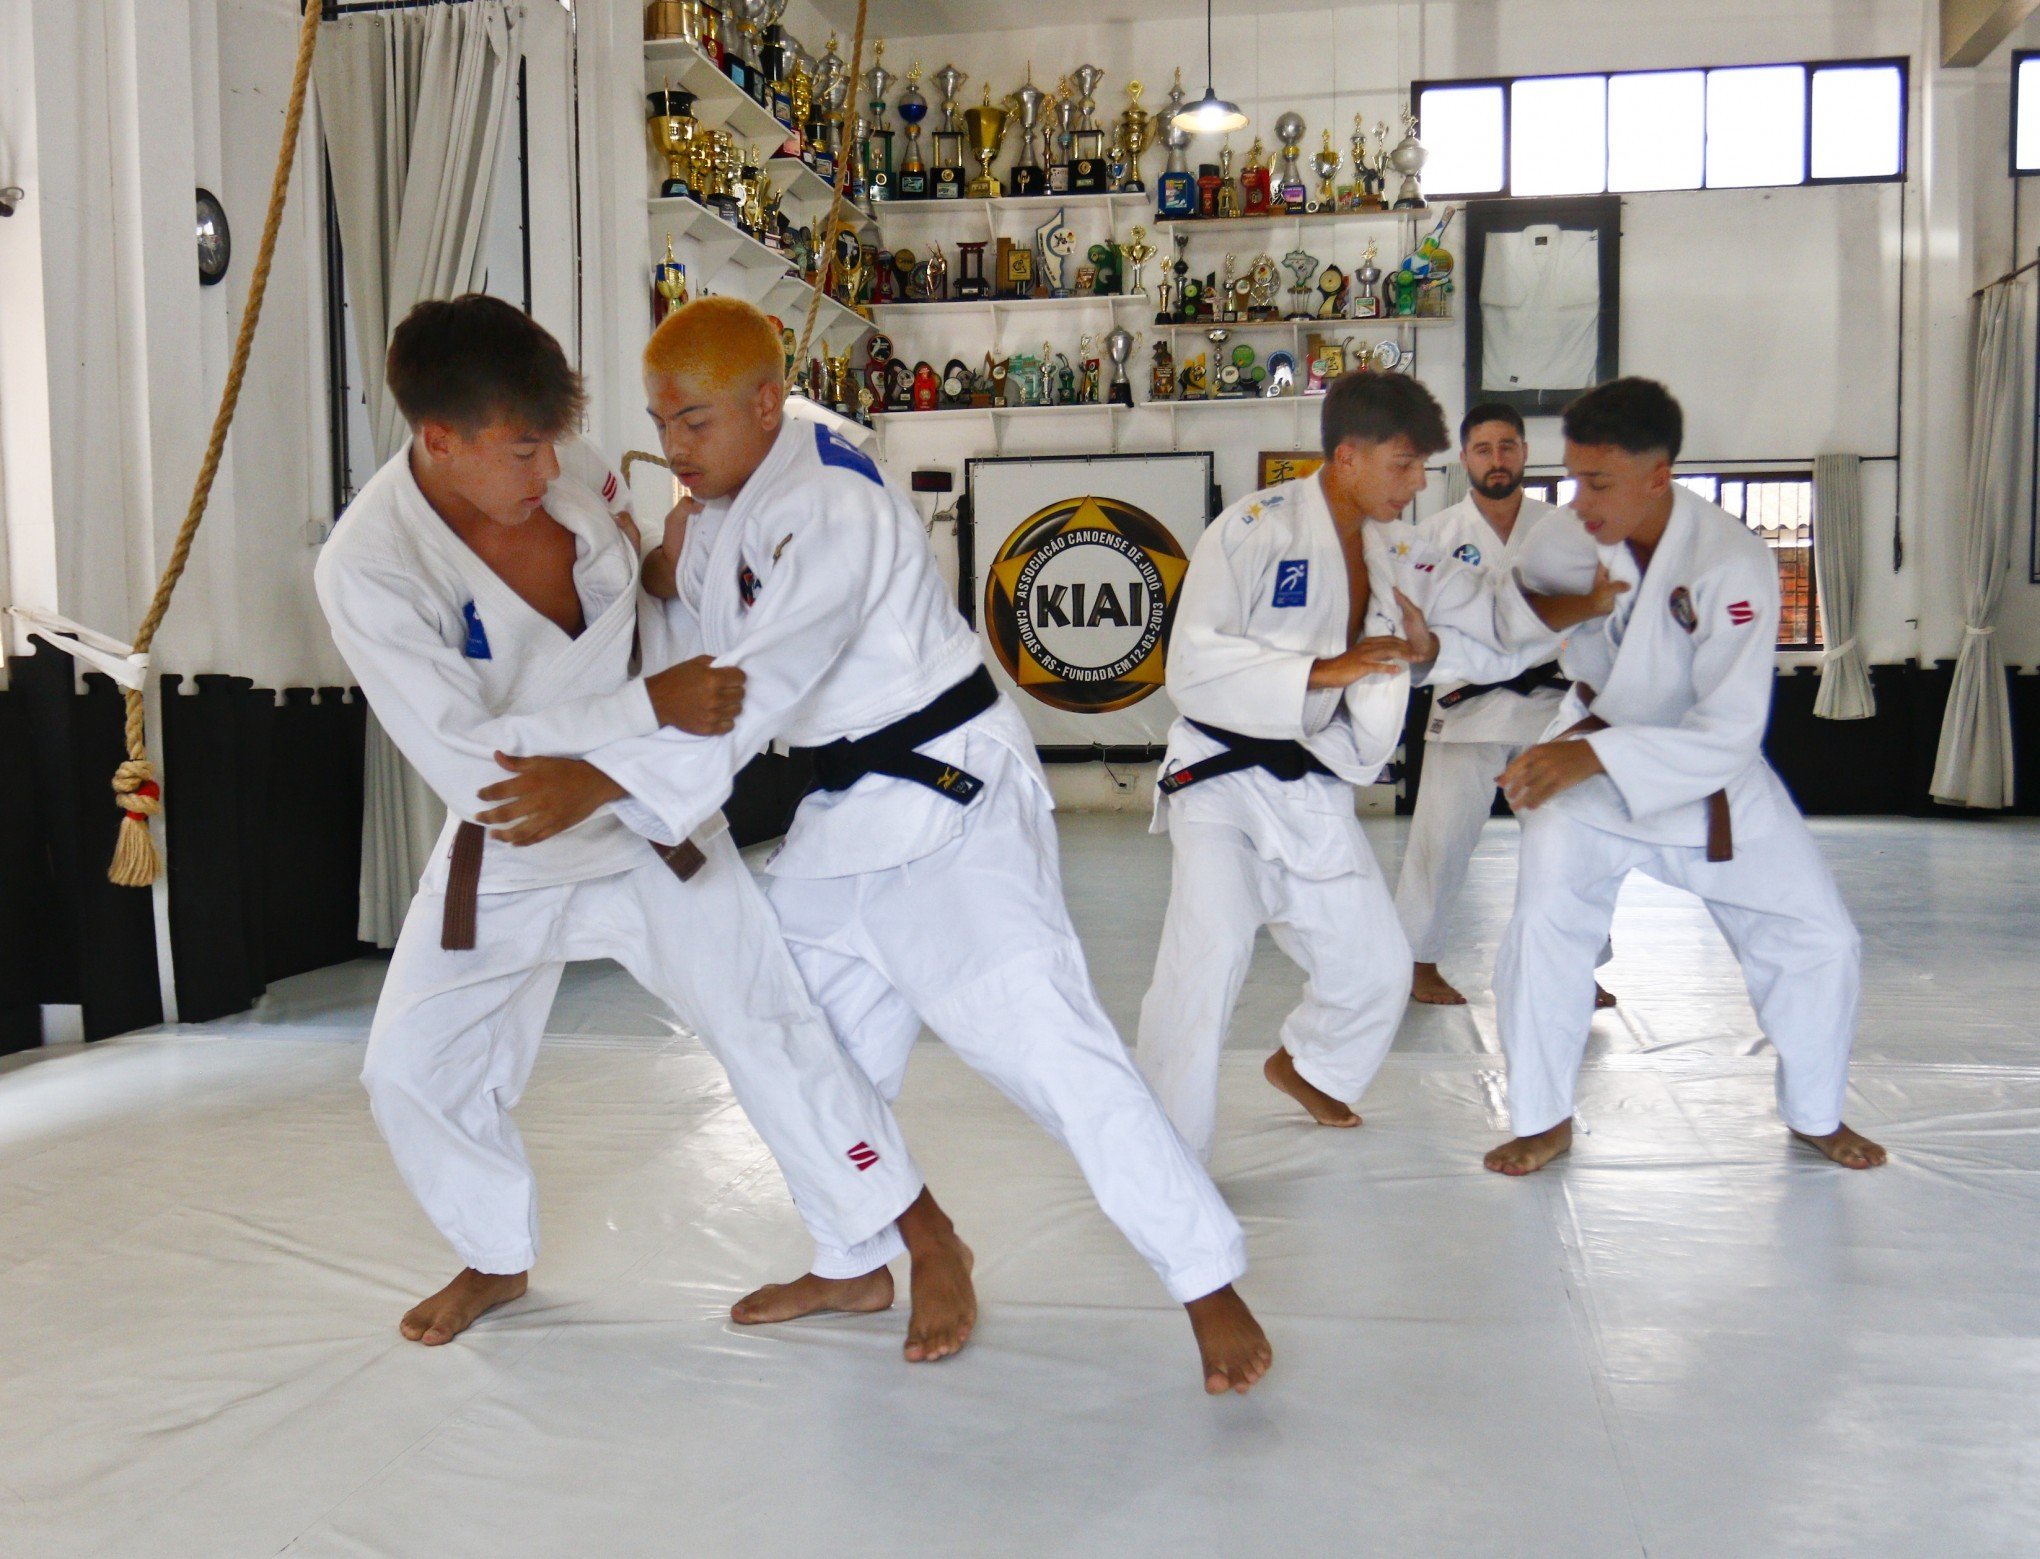 Judocas da Kiai têm vaga para disputar na Croácia